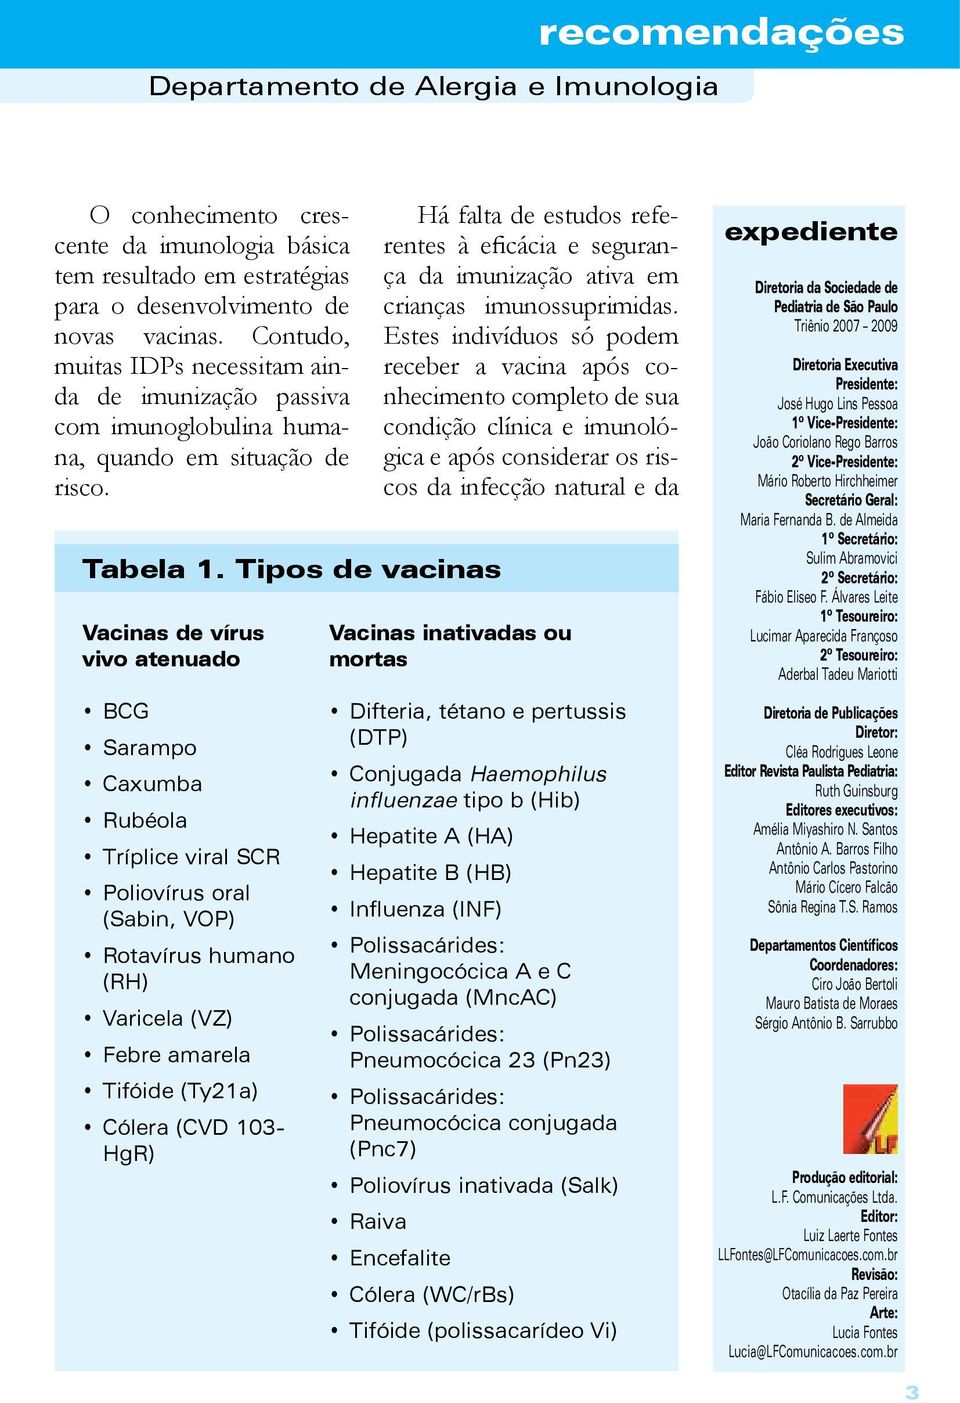 Tipos de vacinas Vacinas de vírus vivo atenuado BCG Sarampo Caxumba Rubéola Tríplice viral SCR Poliovírus oral (Sabin, VOP) Rotavírus humano (RH) Varicela (VZ) Febre amarela Tifóide (Ty21a) Cólera